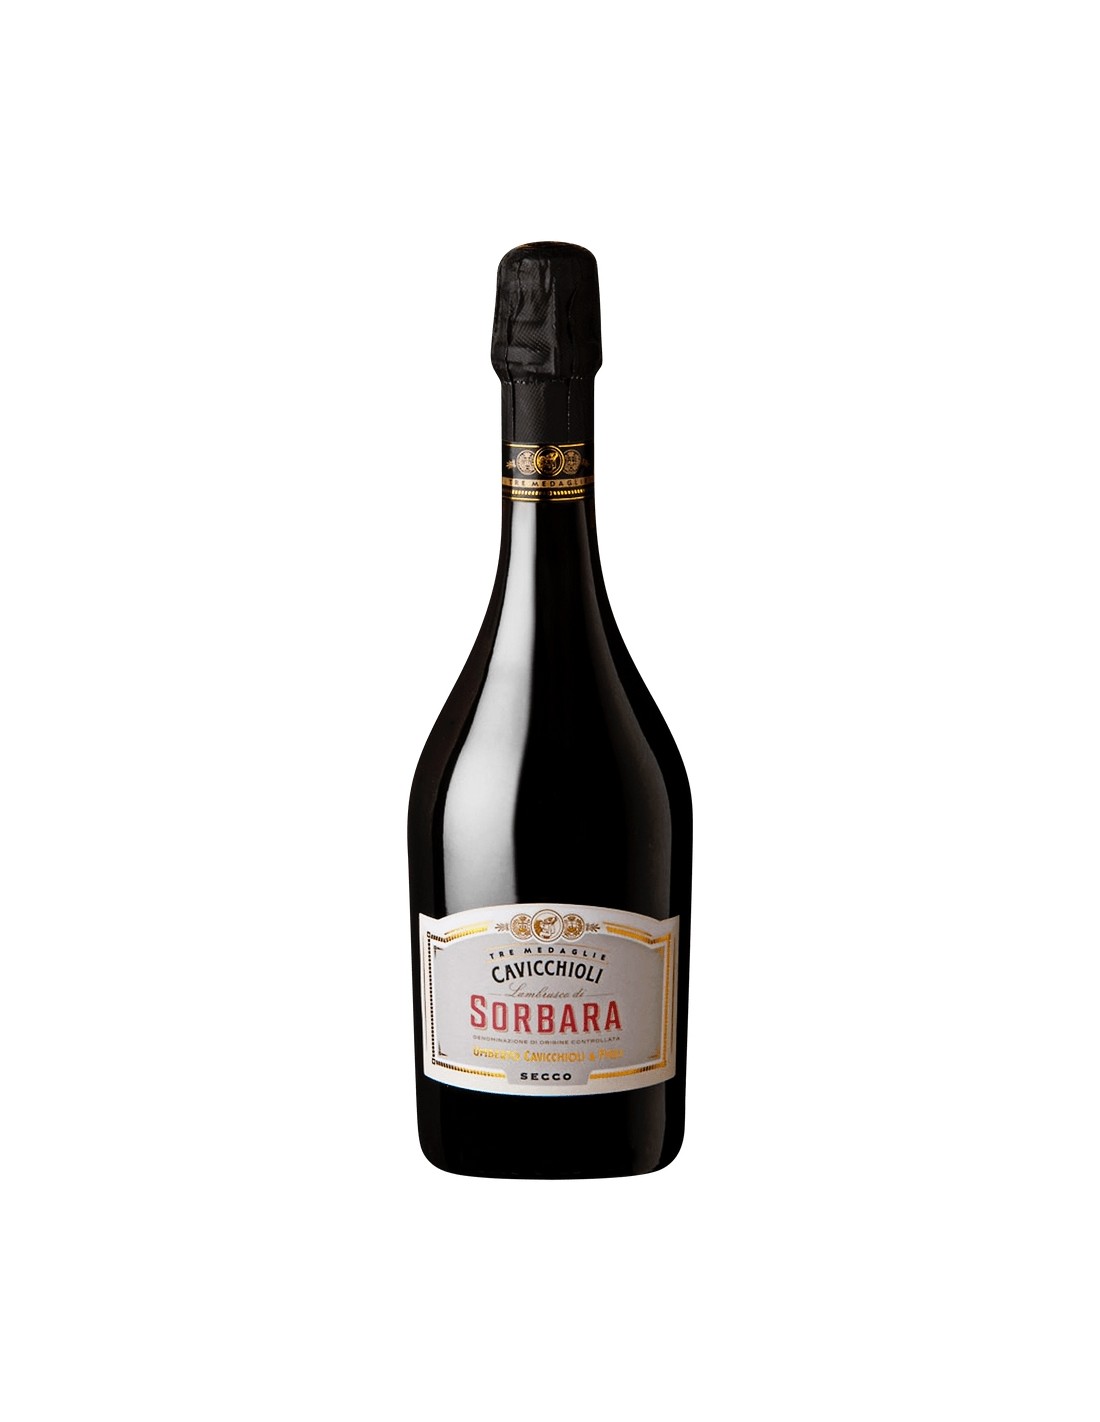 Vin frizzante Cavicchioli Sorbara Secco, 11% alc., 0.75L, Italia